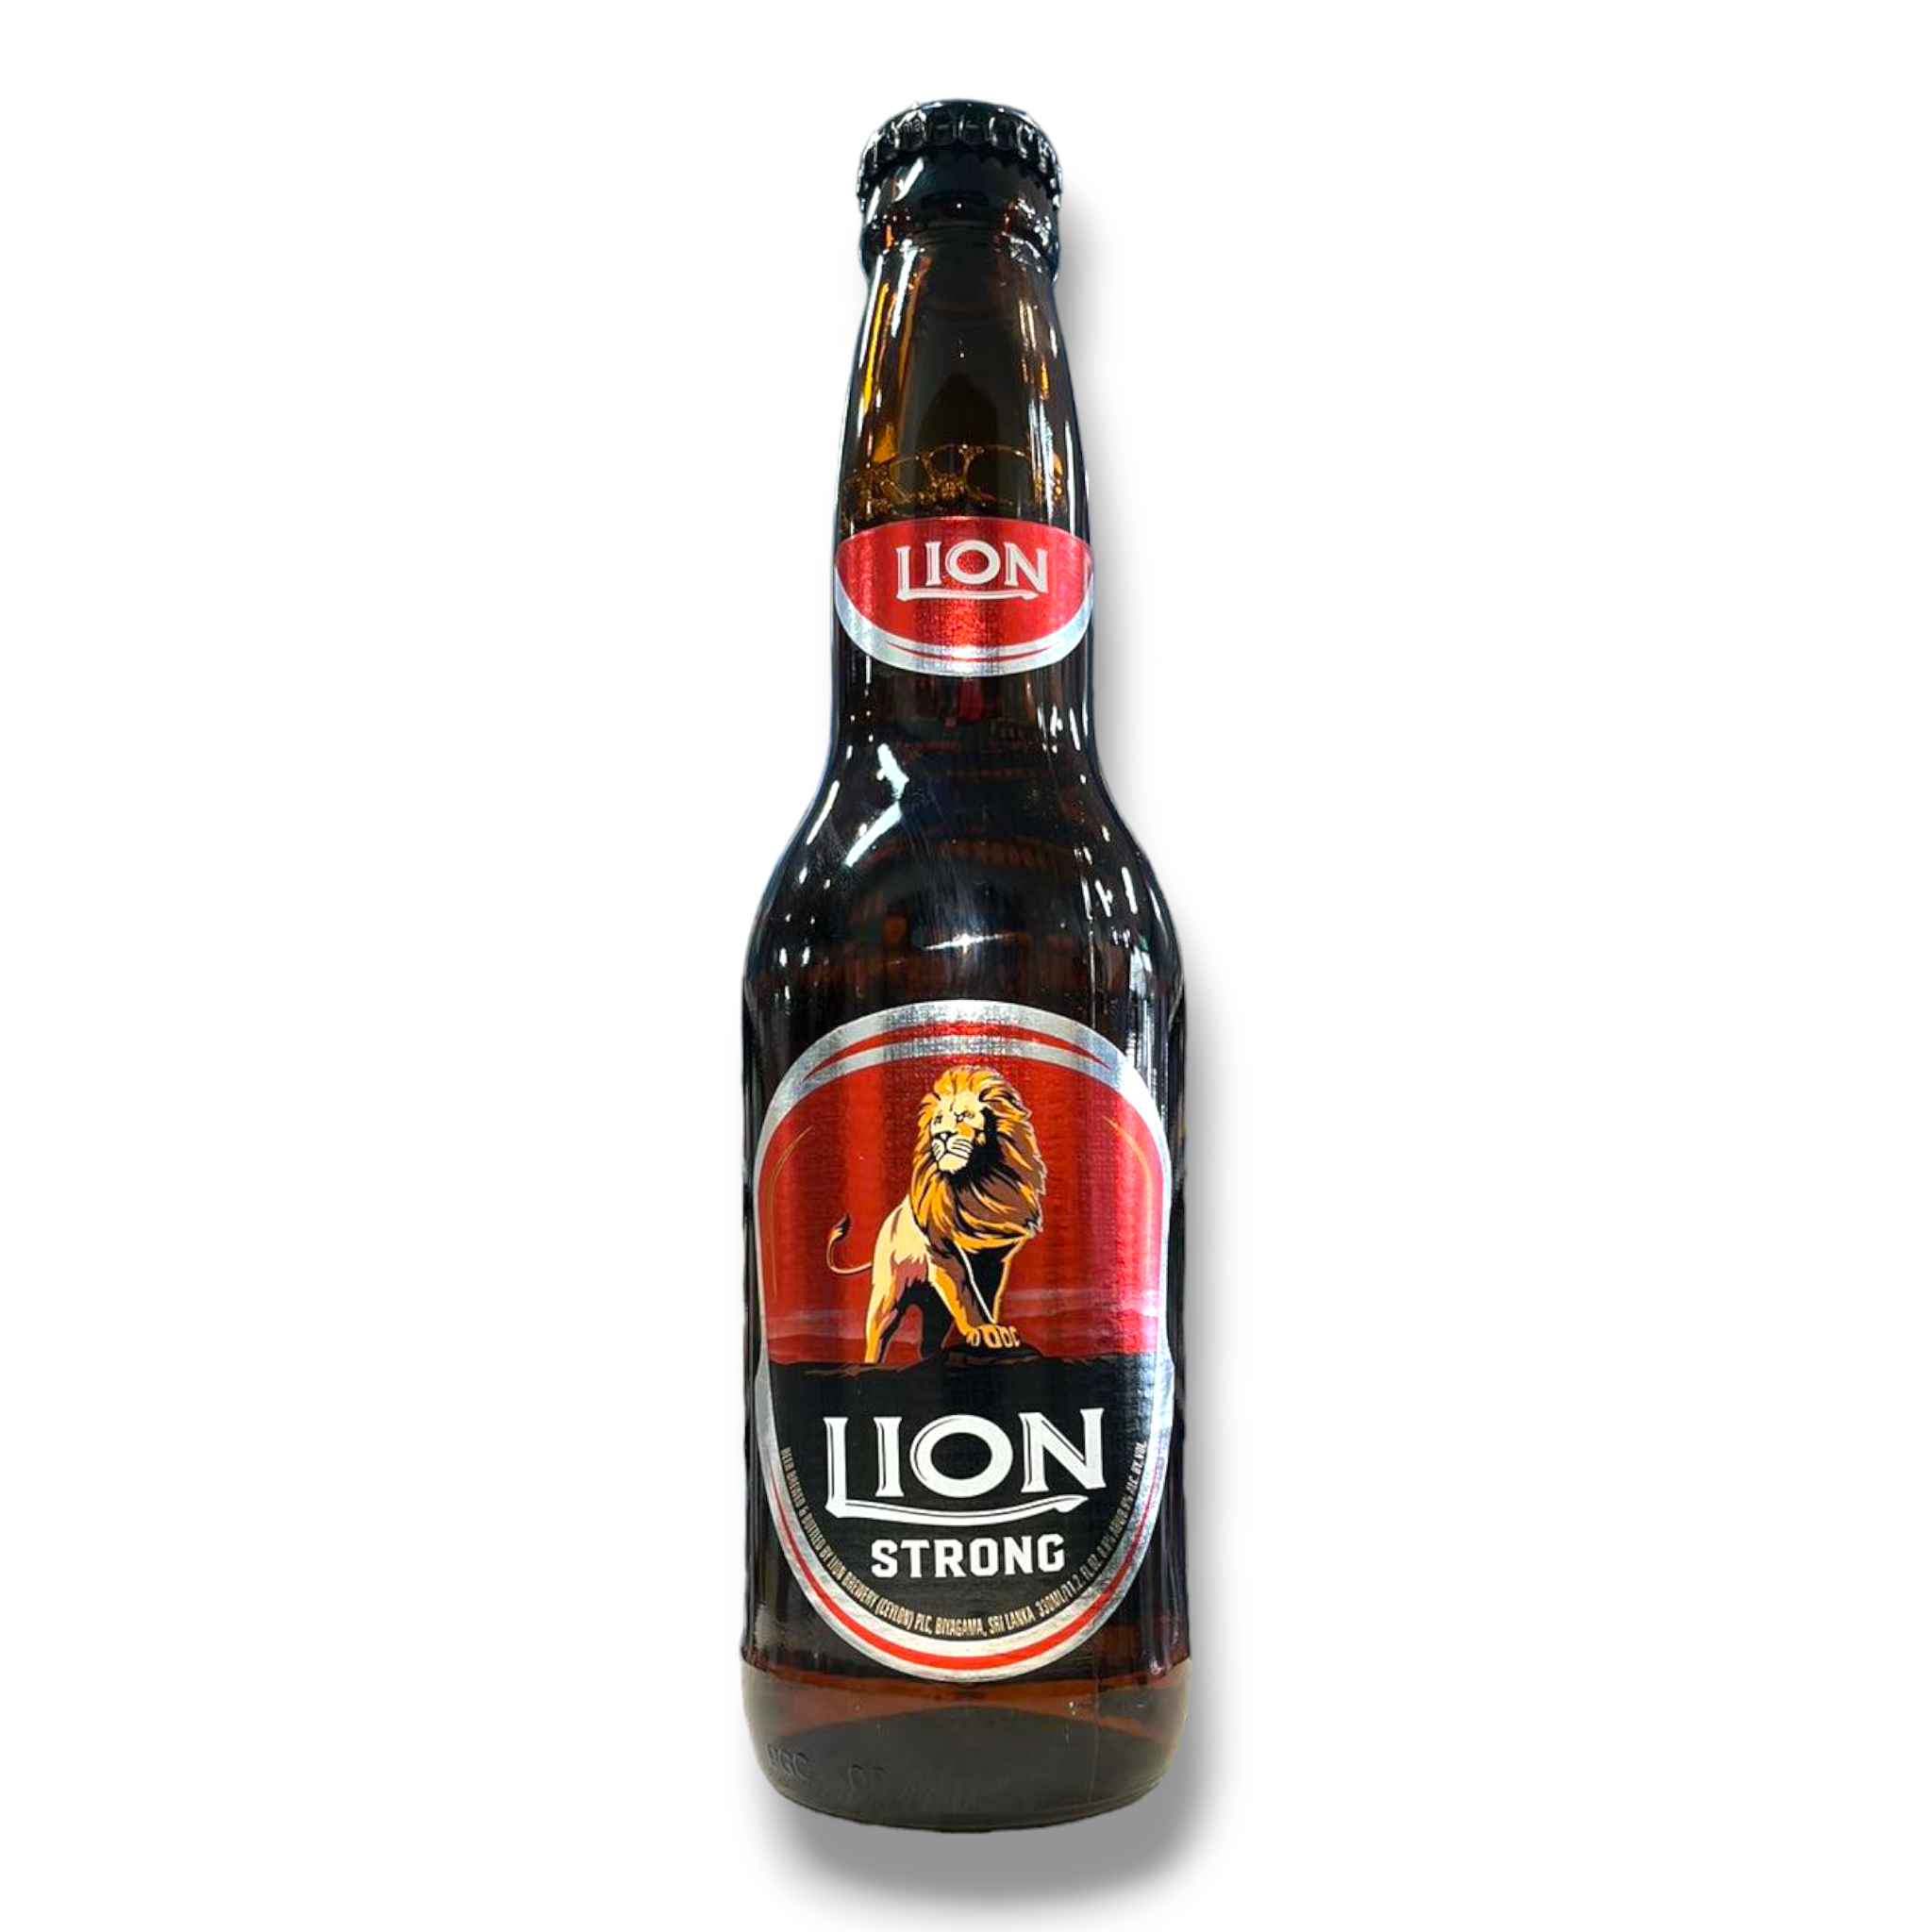 Lion Strong- Starkbier aus Sri Lanka mit 8,8% Vol.